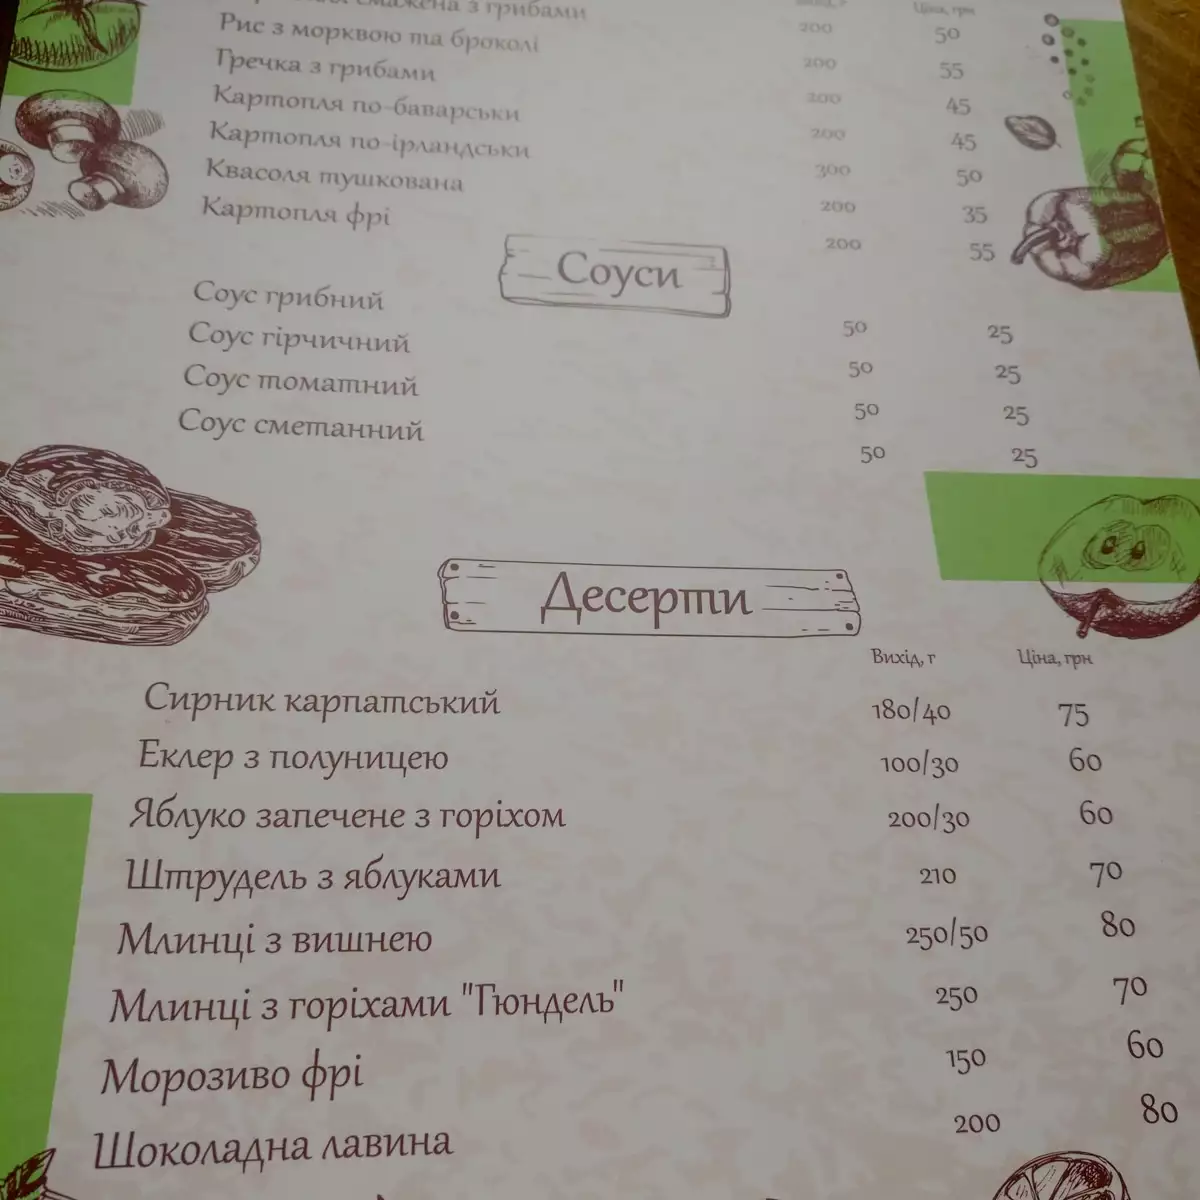 Ресторан «Воєводино»